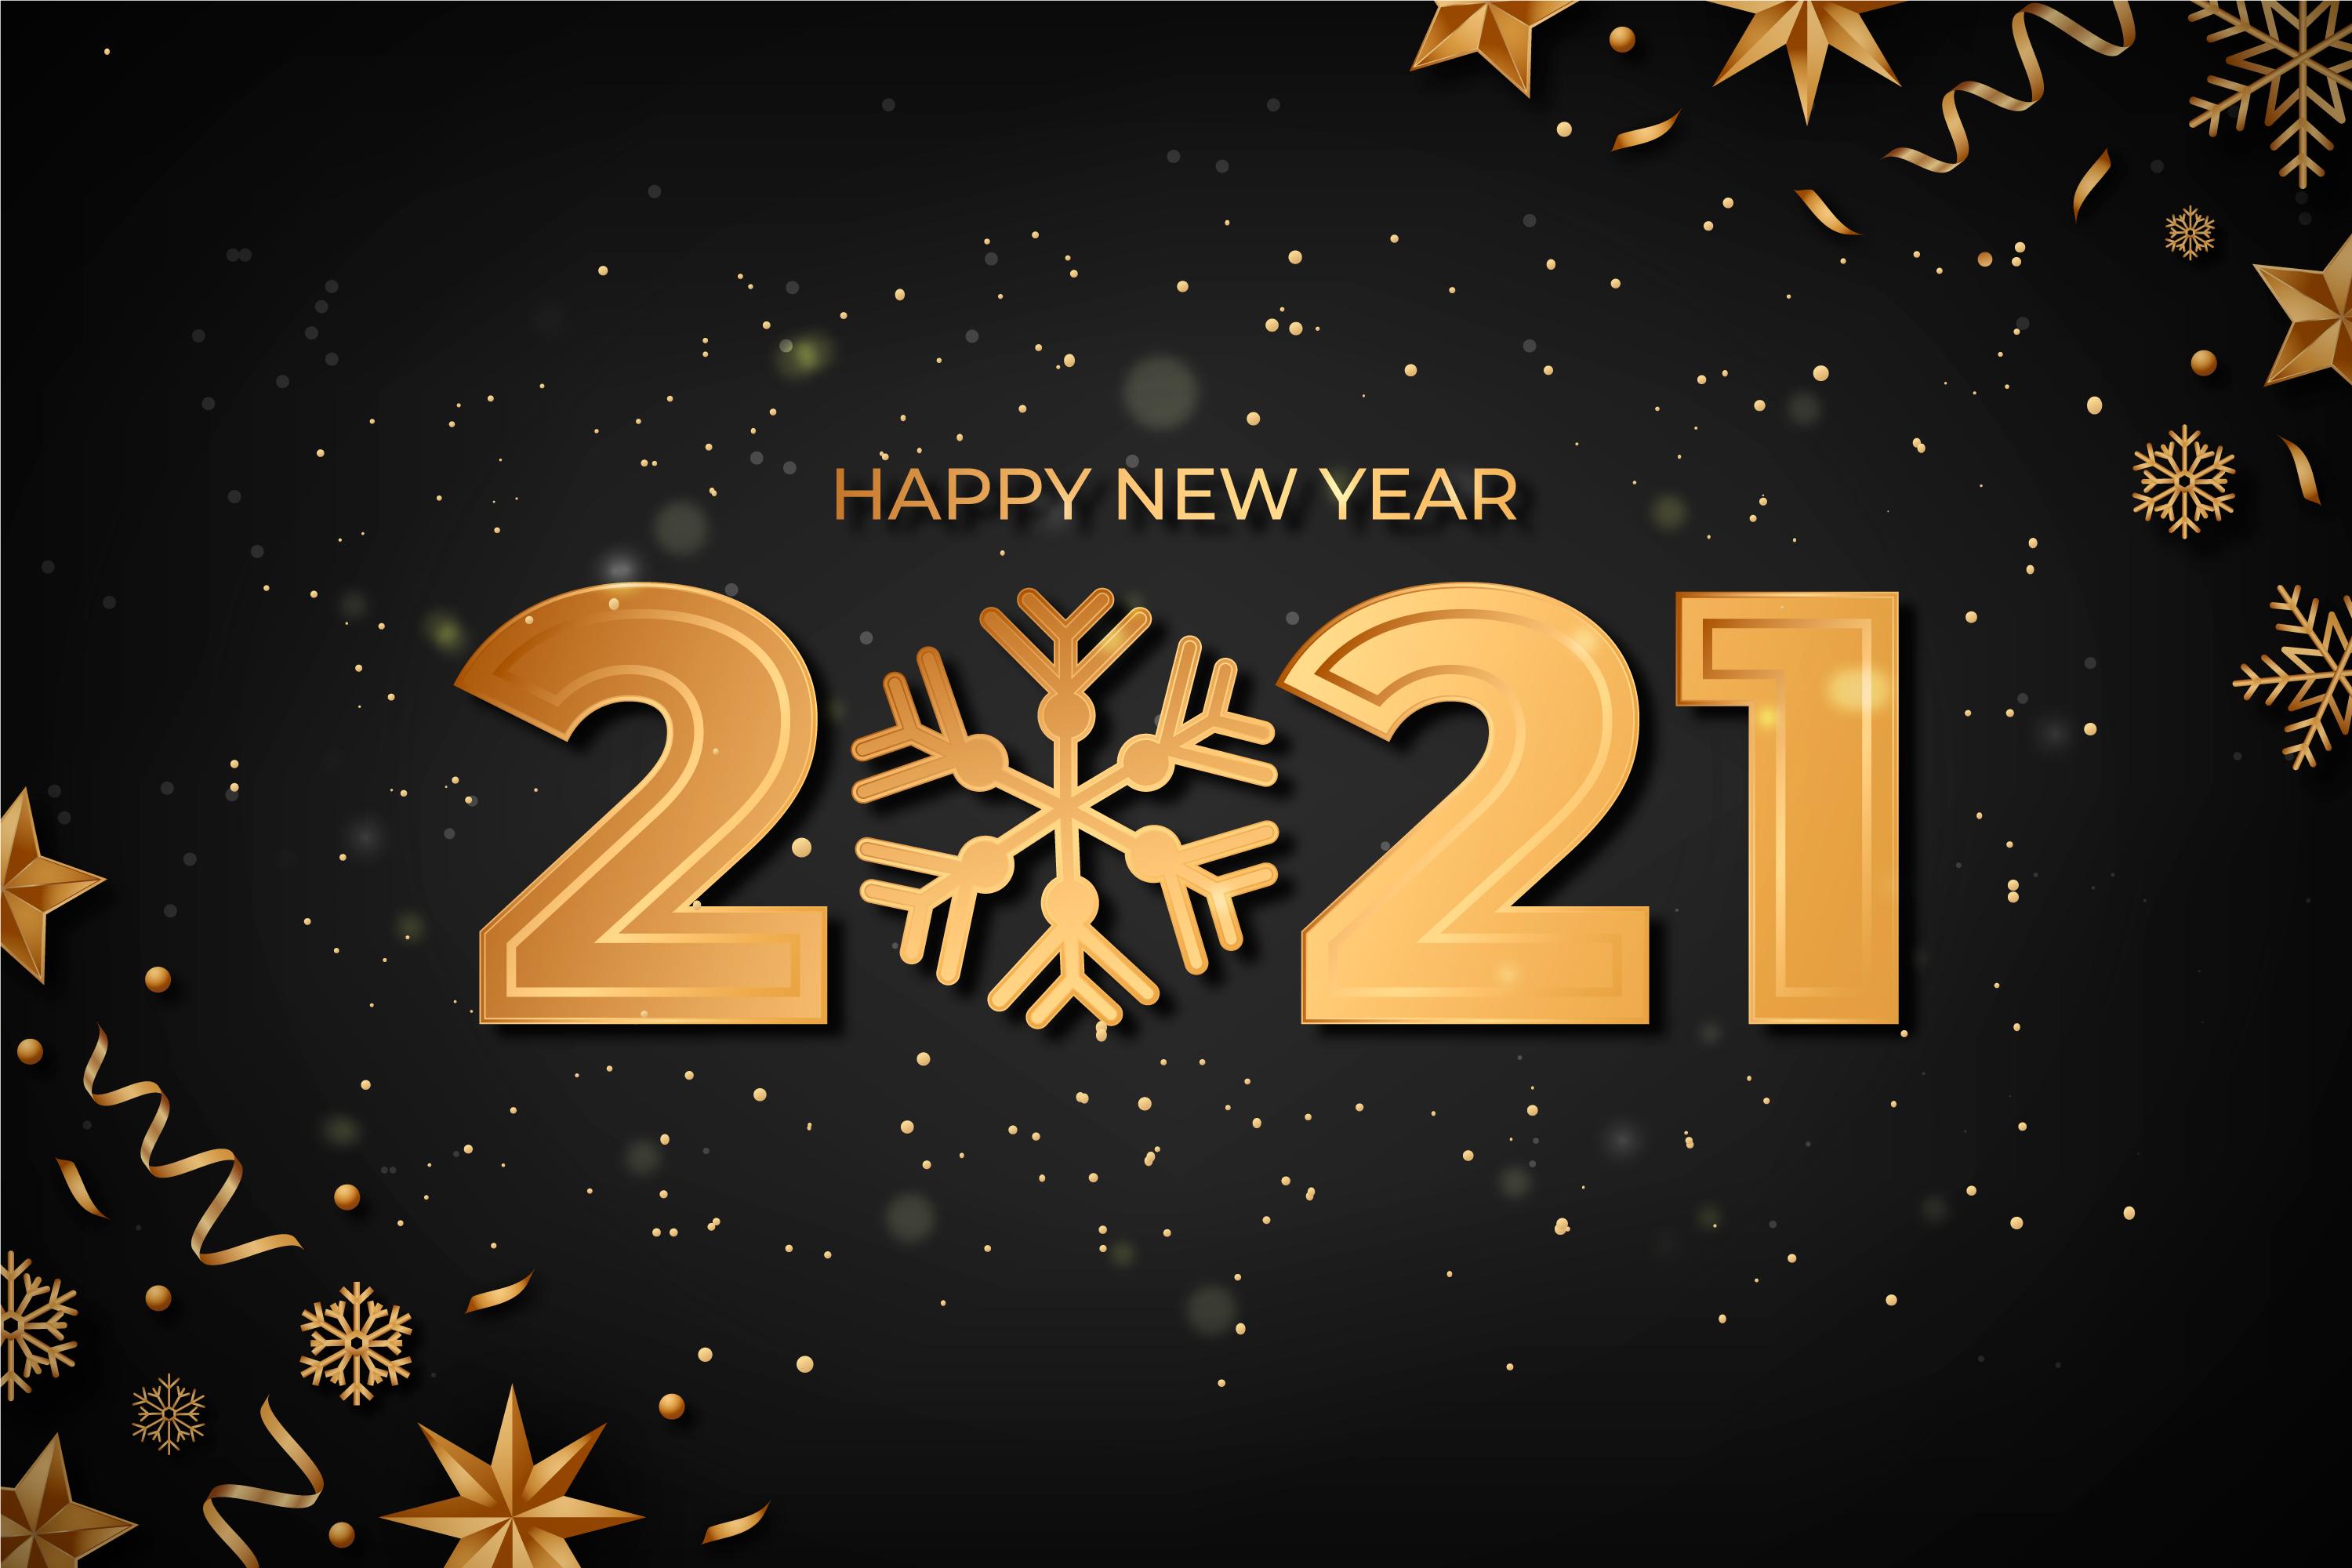 Golden new year 2021 background free vector - Золотой новый год 2021 фон Бесплатные векторы - Oltin yangi yil 2021 yil fon bepul vektor